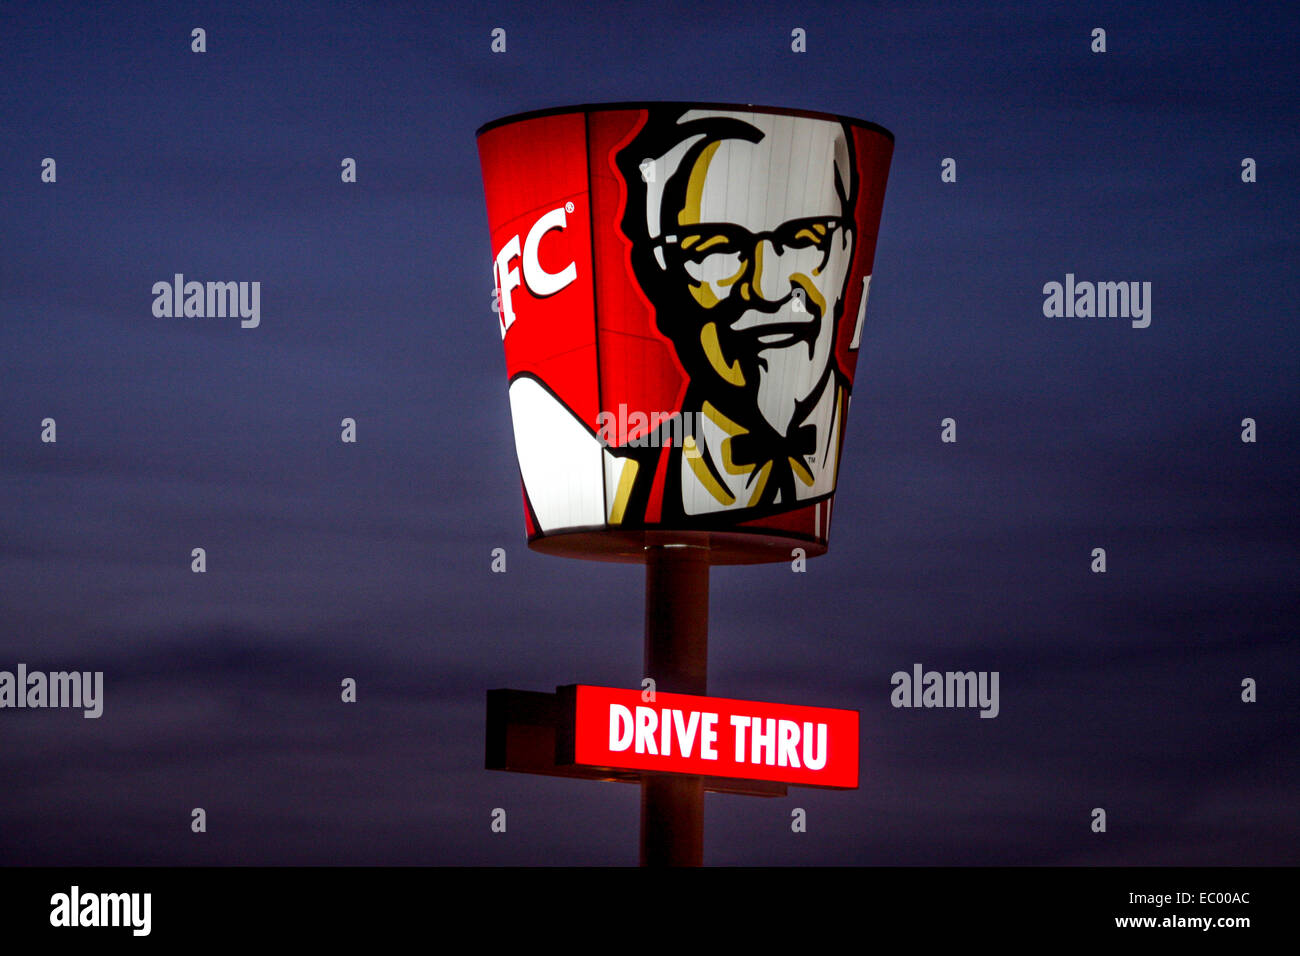 Kentucky fried chicken bucket KFC bucket KFC logo drive thru Prague Czech Republic Stock Photo